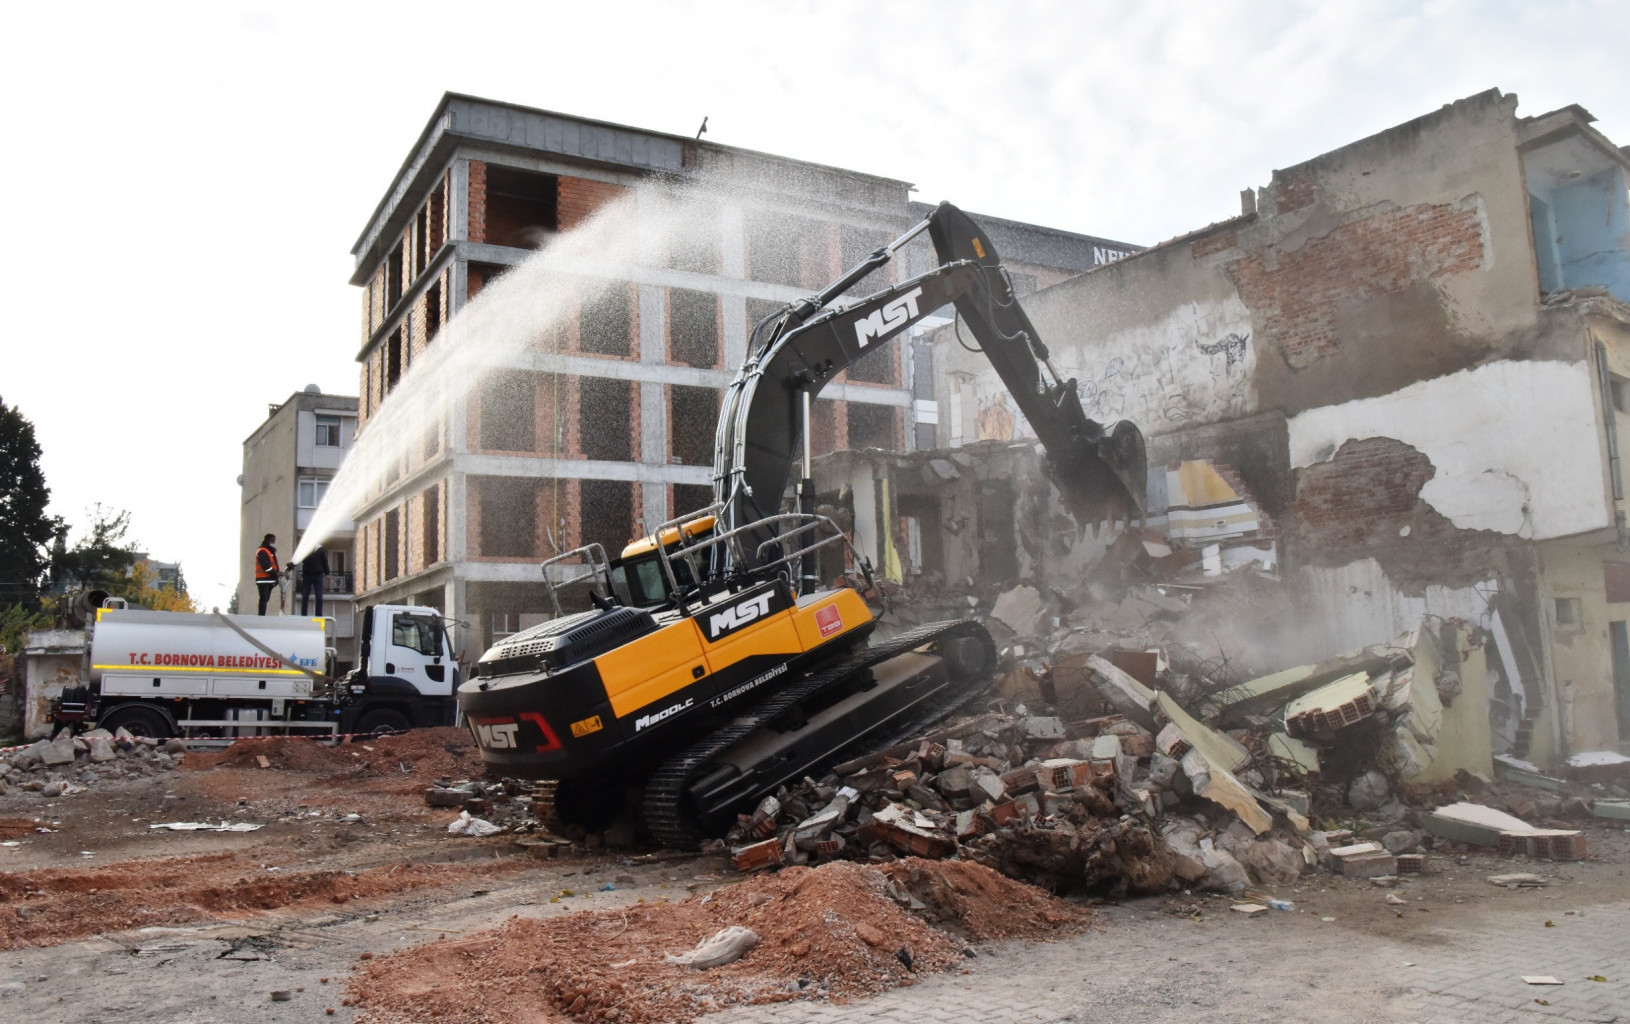 Bornova Belediyesi, kamulaştırma işlemi tamamlanan metruk binaları yıkımını sürdürüyor.